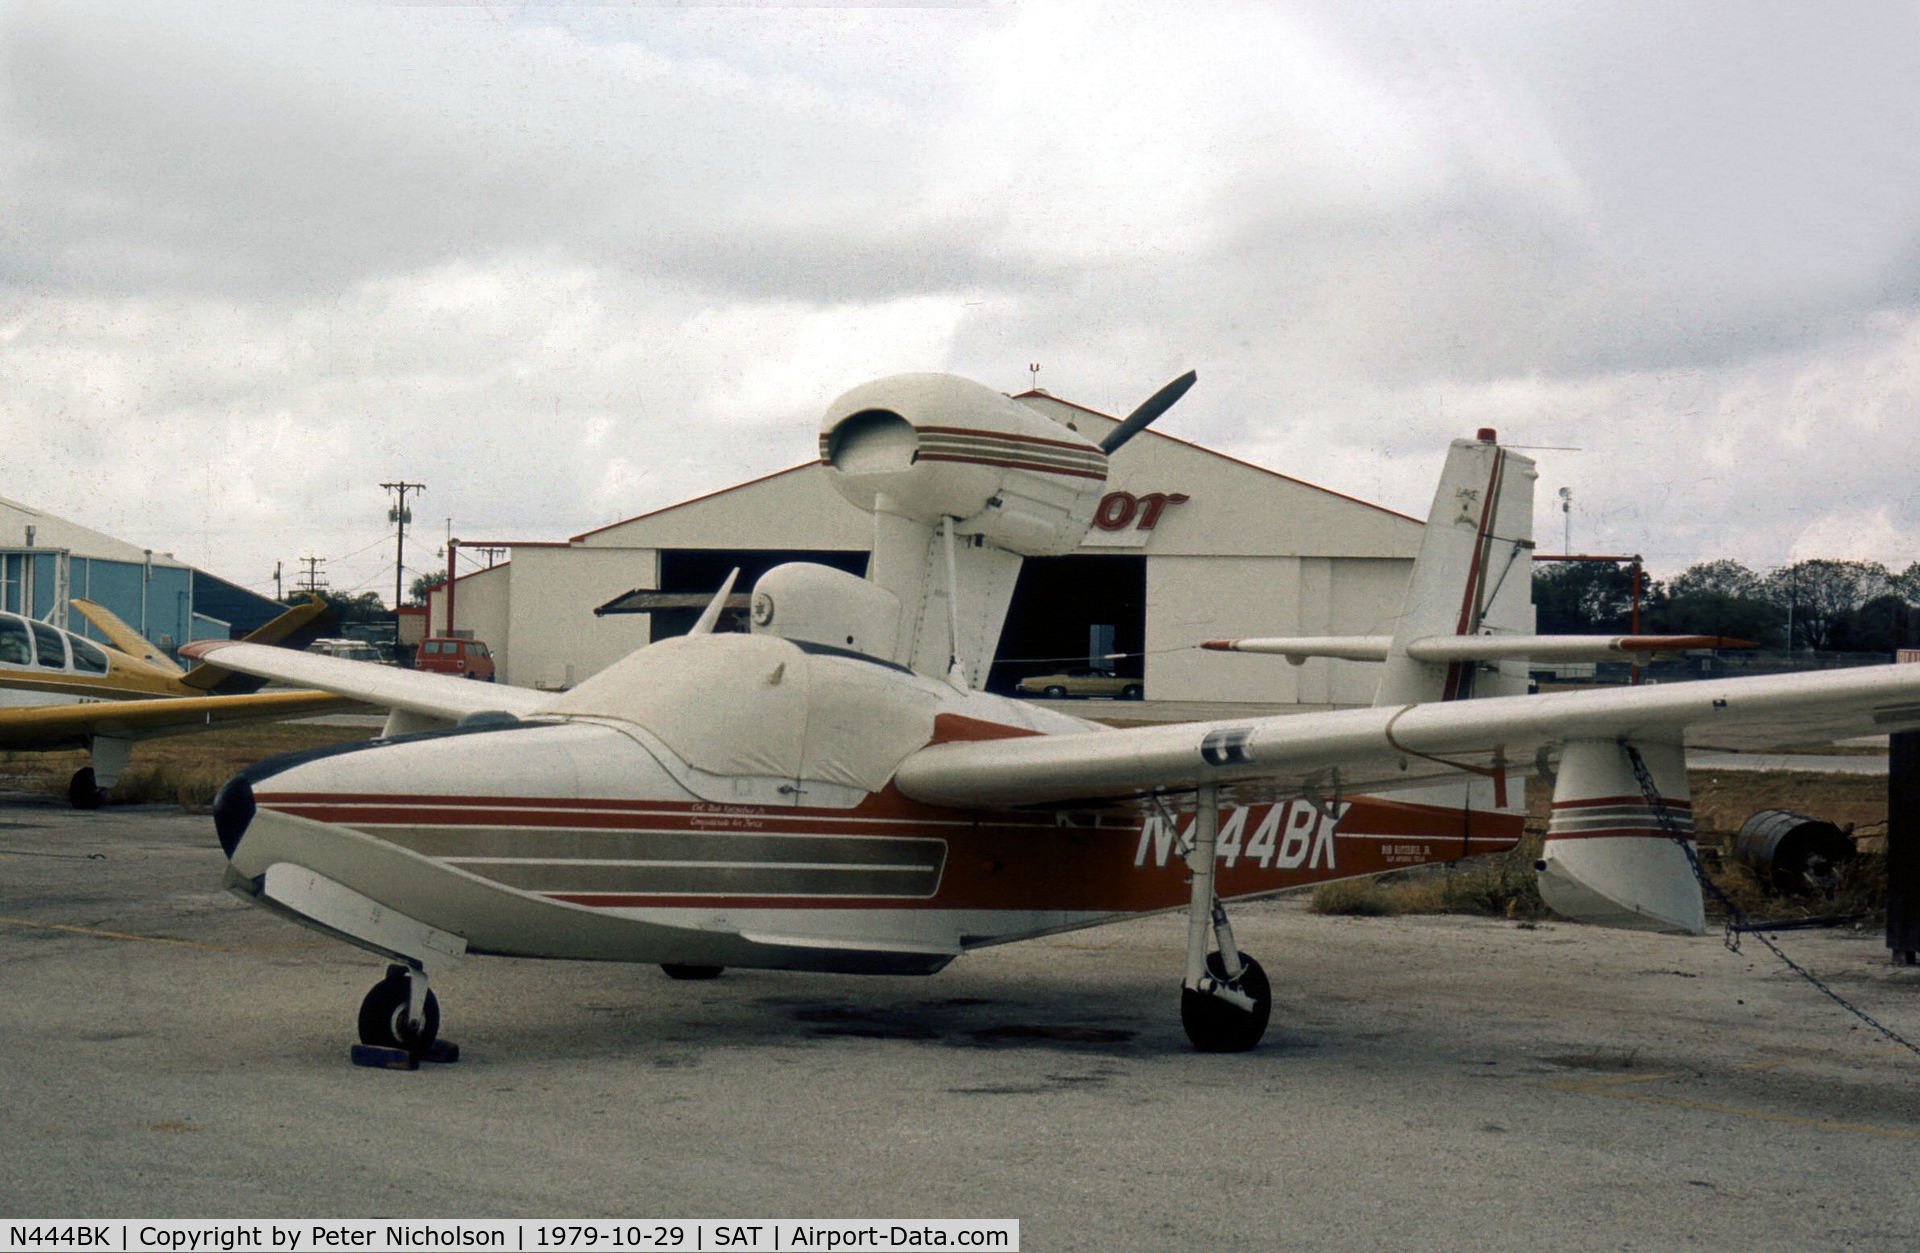 N444BK, Lake LA-4-200 Buccaneer Buccaneer C/N Not found N444BK, This Buccaneer was seen at San Antonio in October 1979.